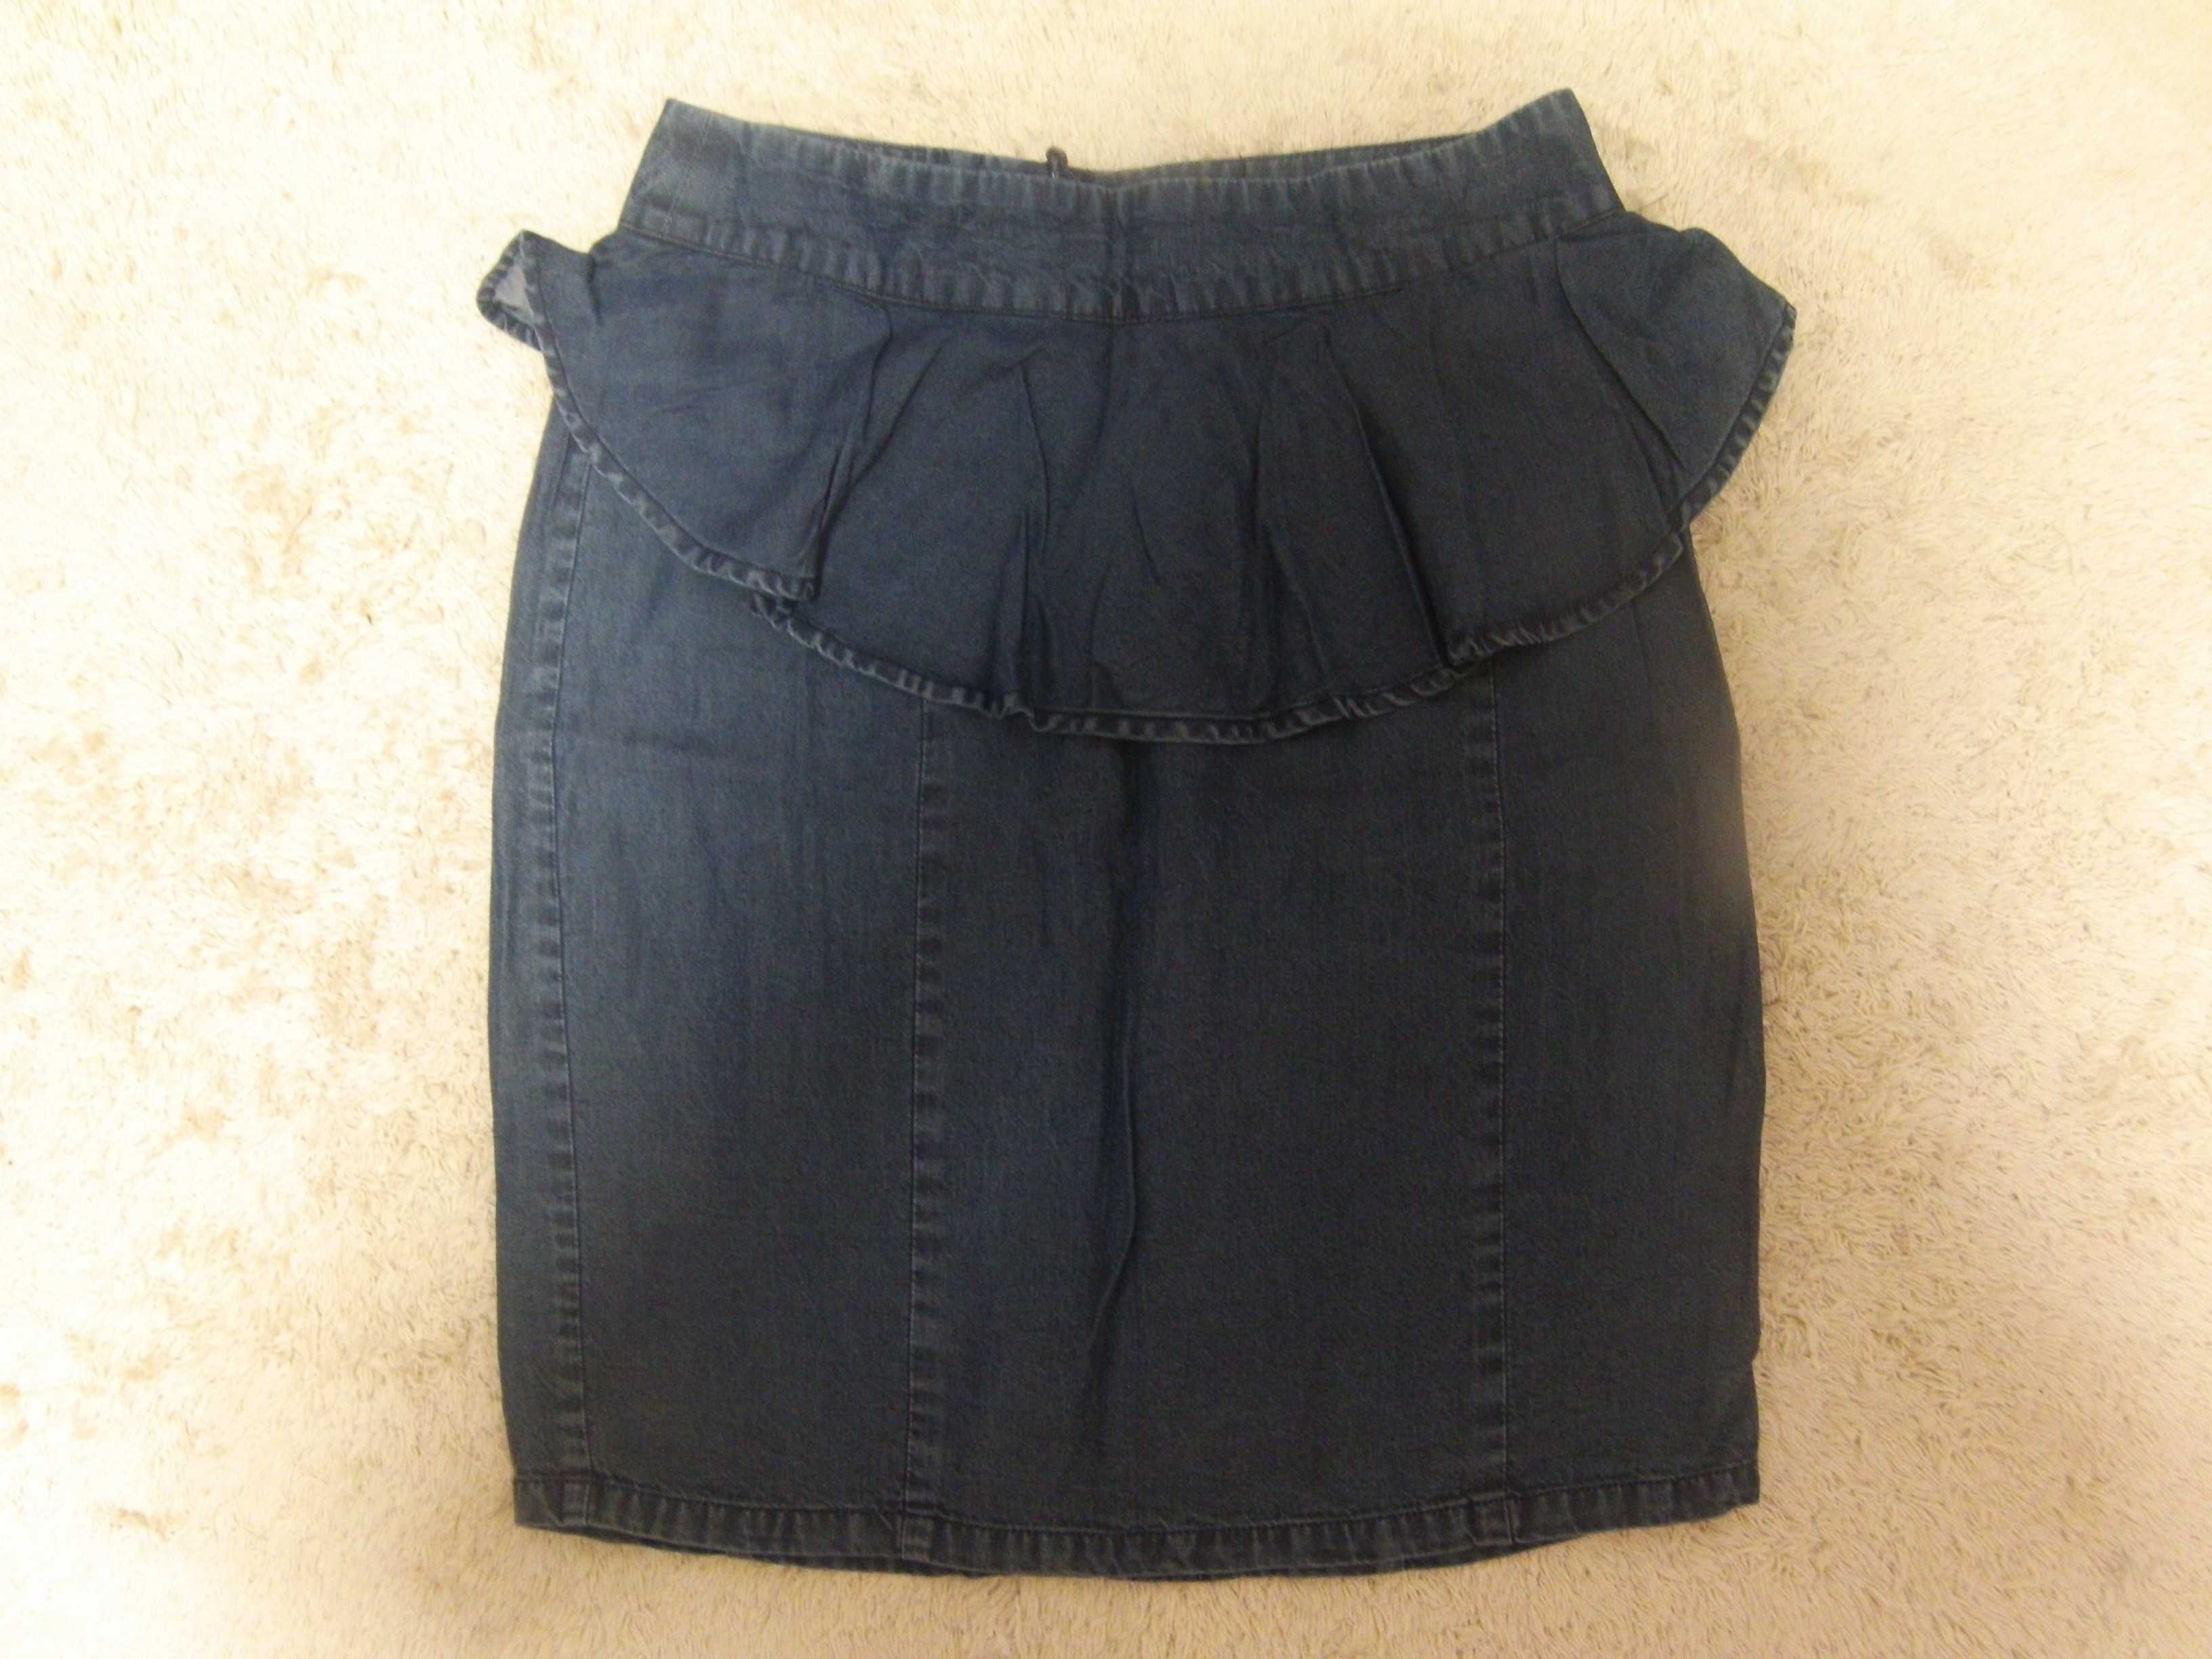 Юбка H&M летняя миди (джинсовая) синяя